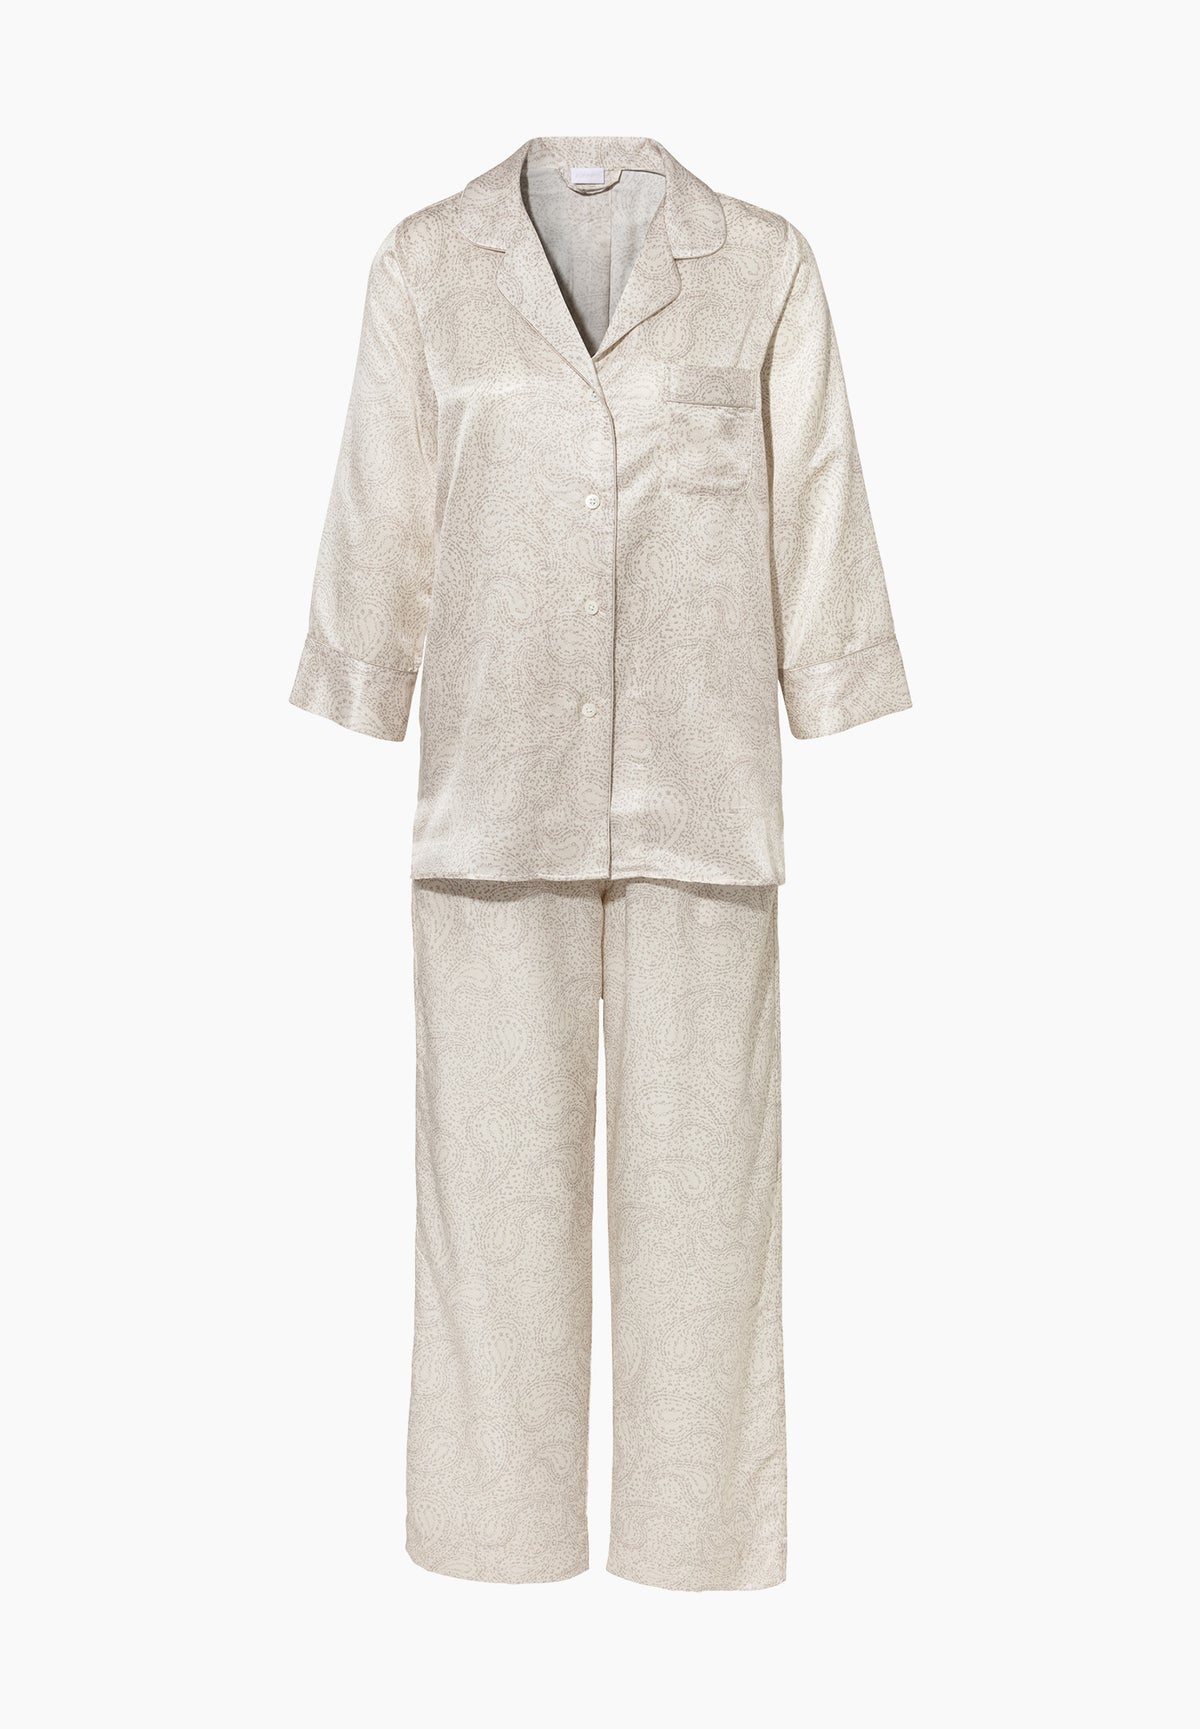 Cotton/Silk Print | Cropped Pyjama 3/4-Ärmel - paisley sand